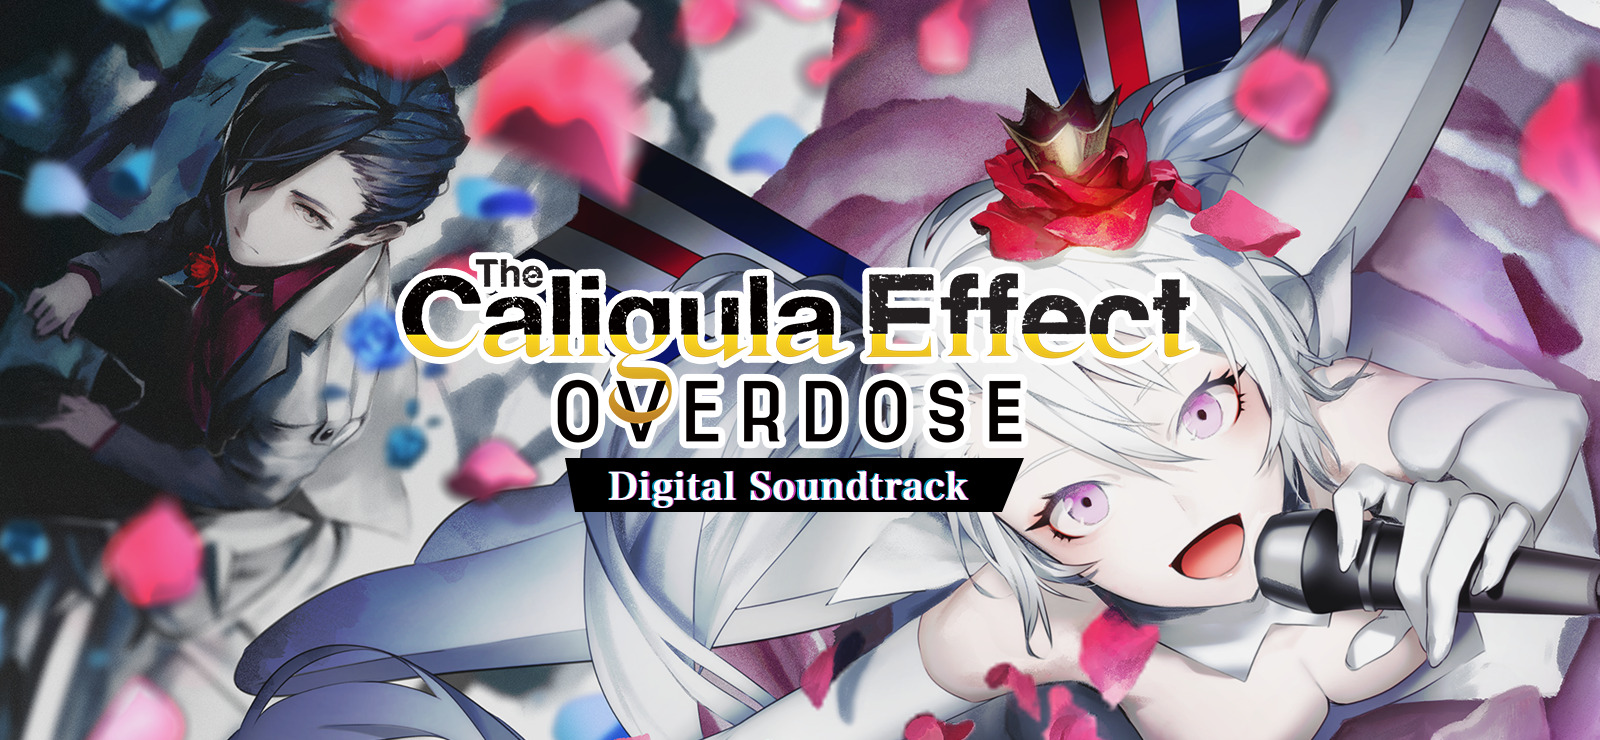 The Caligula Effect: Overdose - Digital Soundtrack DLC Steam CD Key 4.36$